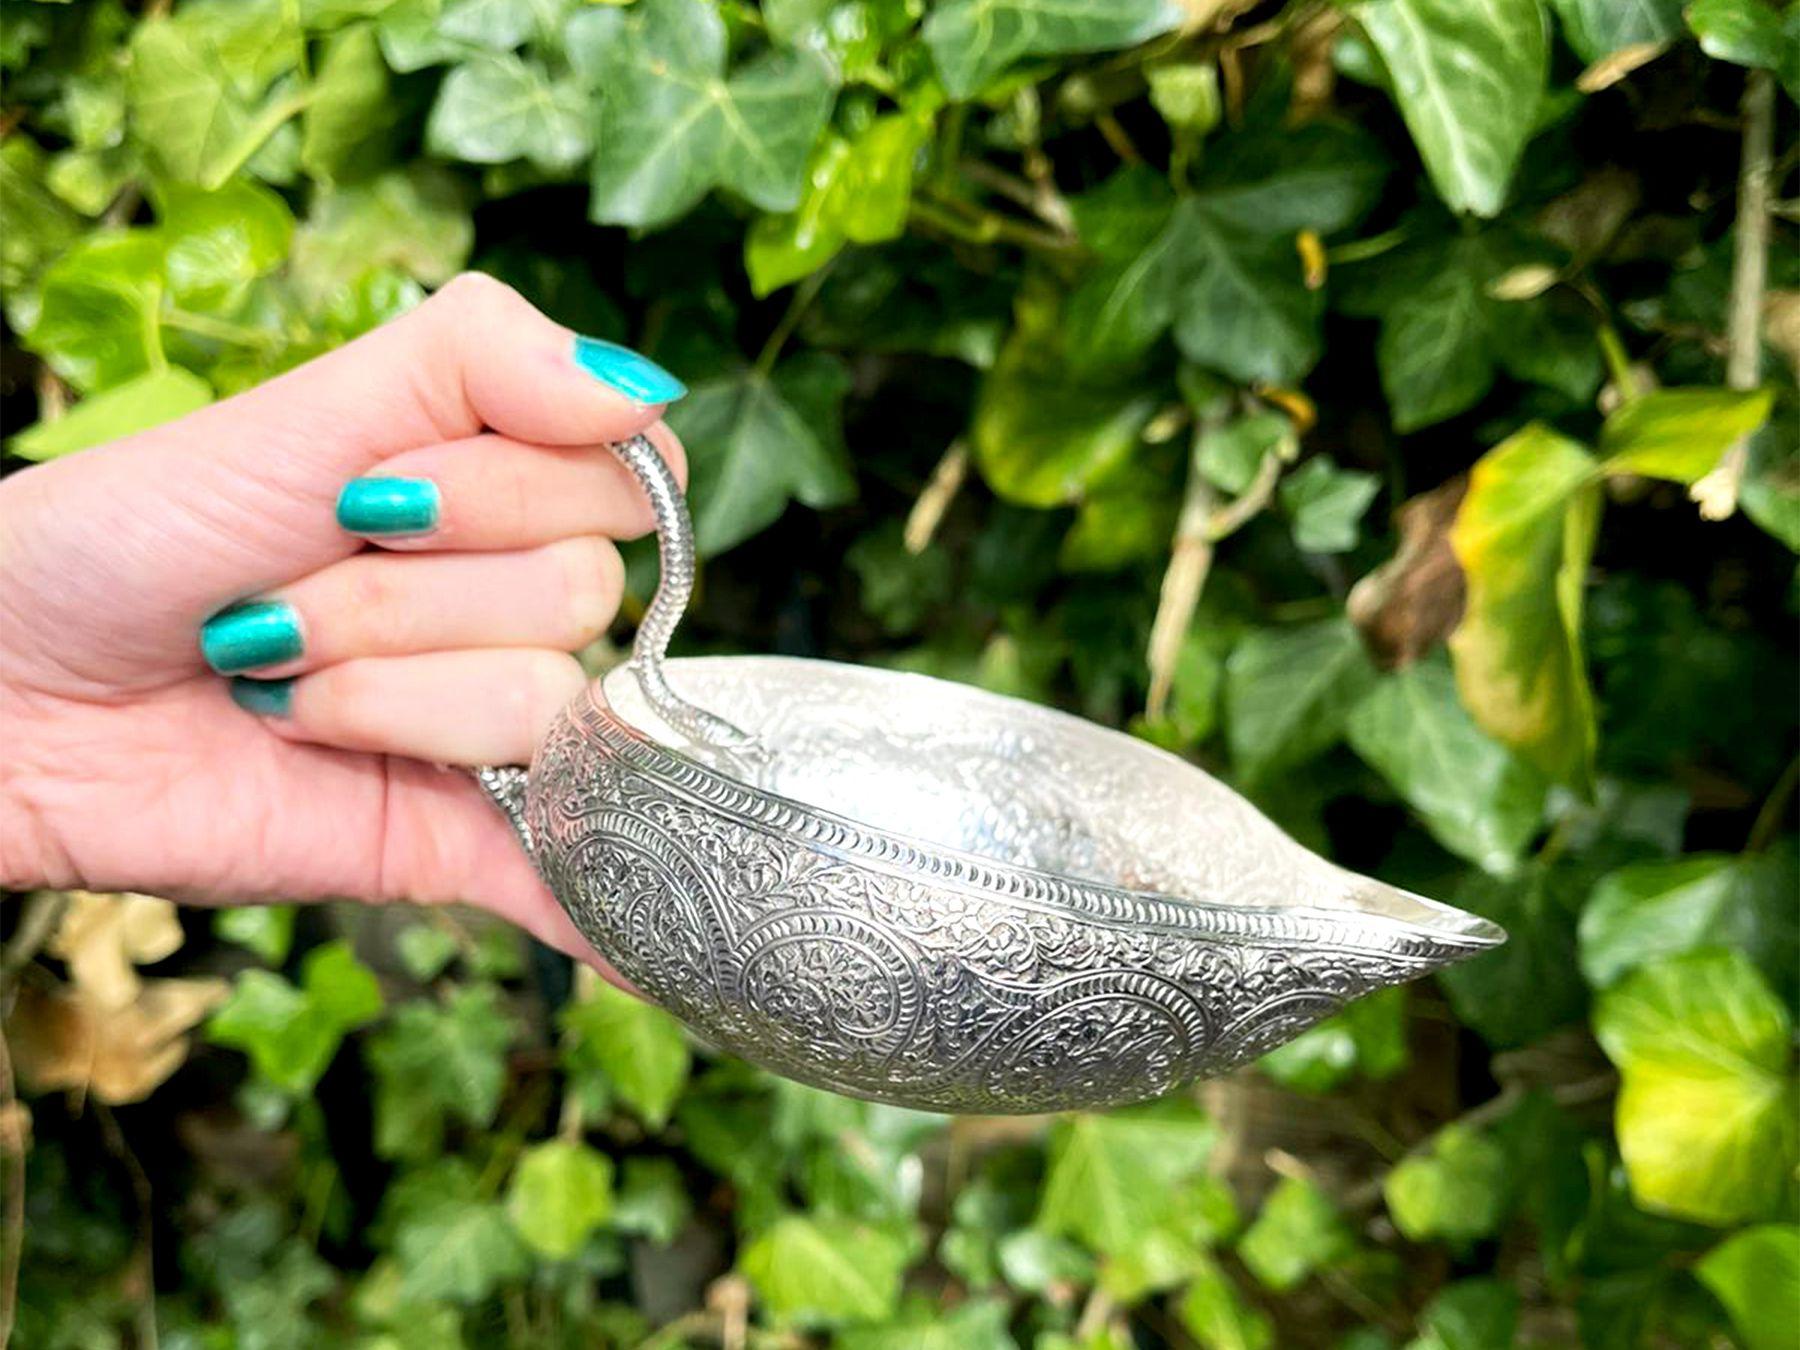 Eine außergewöhnliche, feine und beeindruckende antike viktorianische englische Sterlingsilber-Sahnekanne; eine Ergänzung zu unserer Silber-Teegeschirr-Sammlung.

Dieses außergewöhnliche antike viktorianische Sterlingsilber-Sahnekännchen hat eine